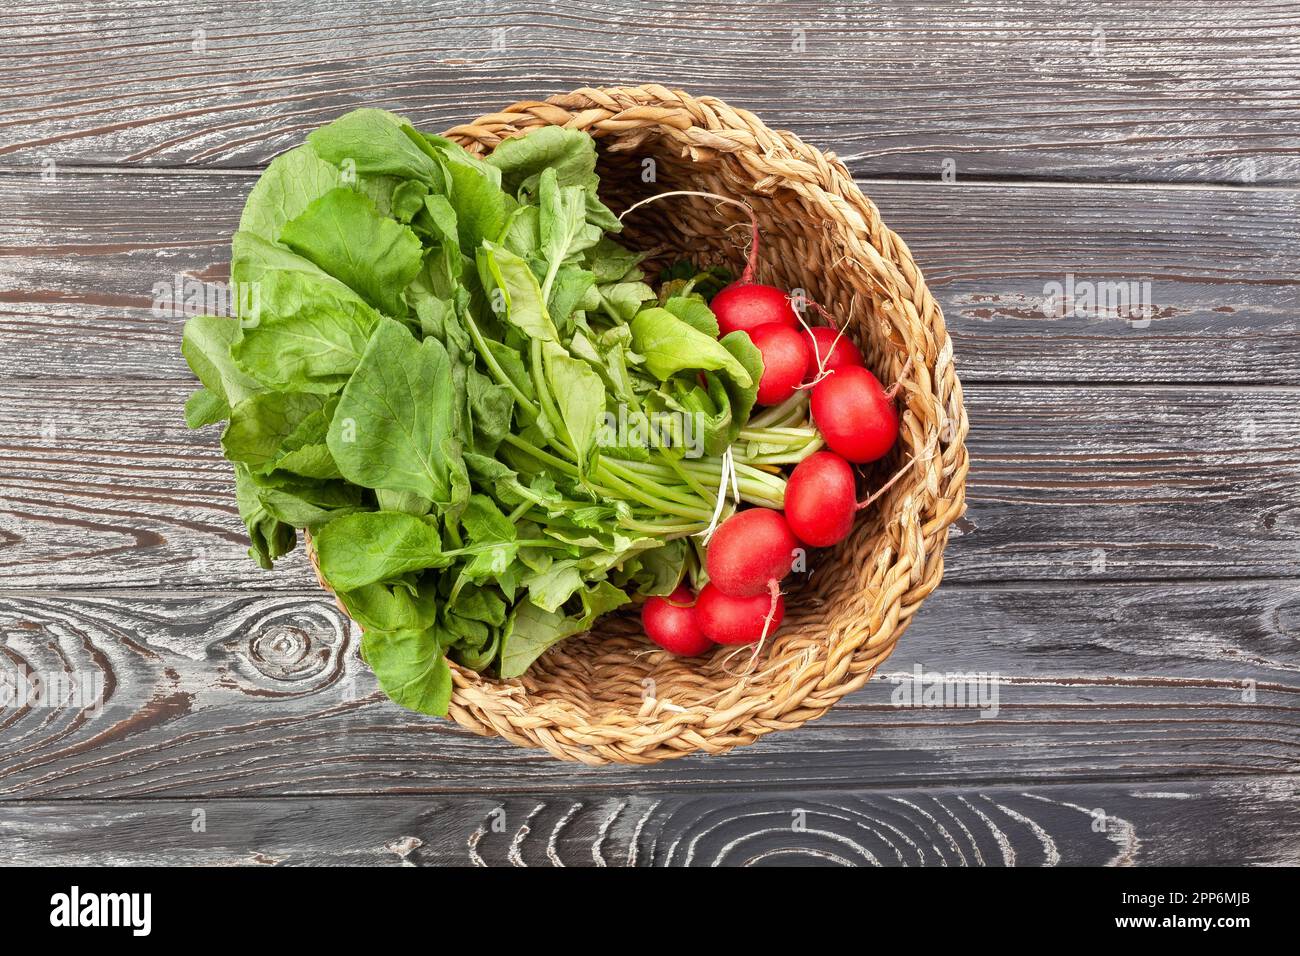 radish basket on wood background Stock Photo